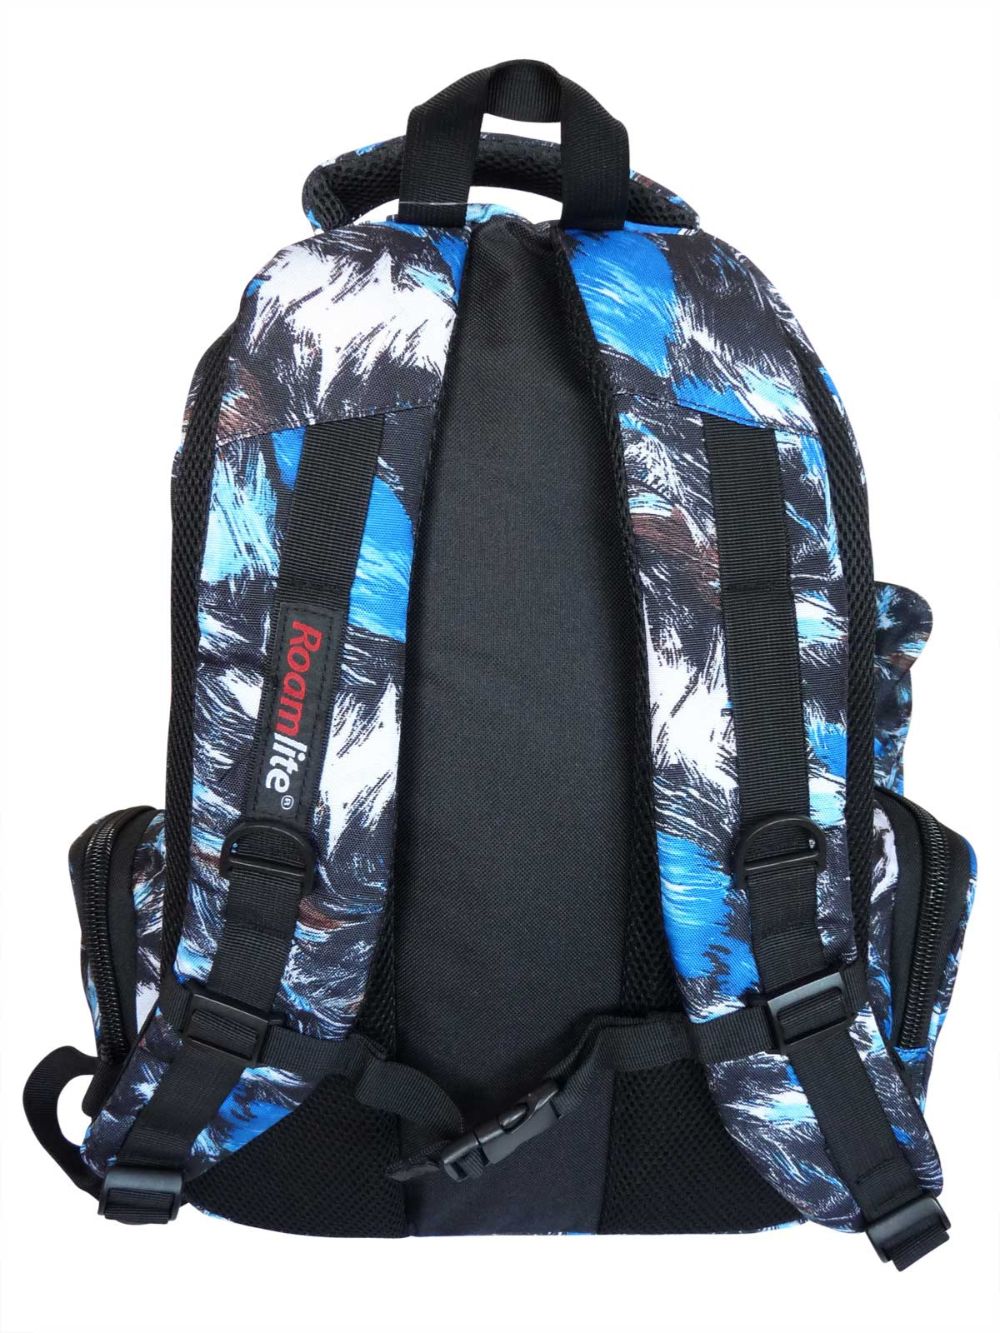 Roamlite Childrens Backpack Blue Paint pattern RL839  back